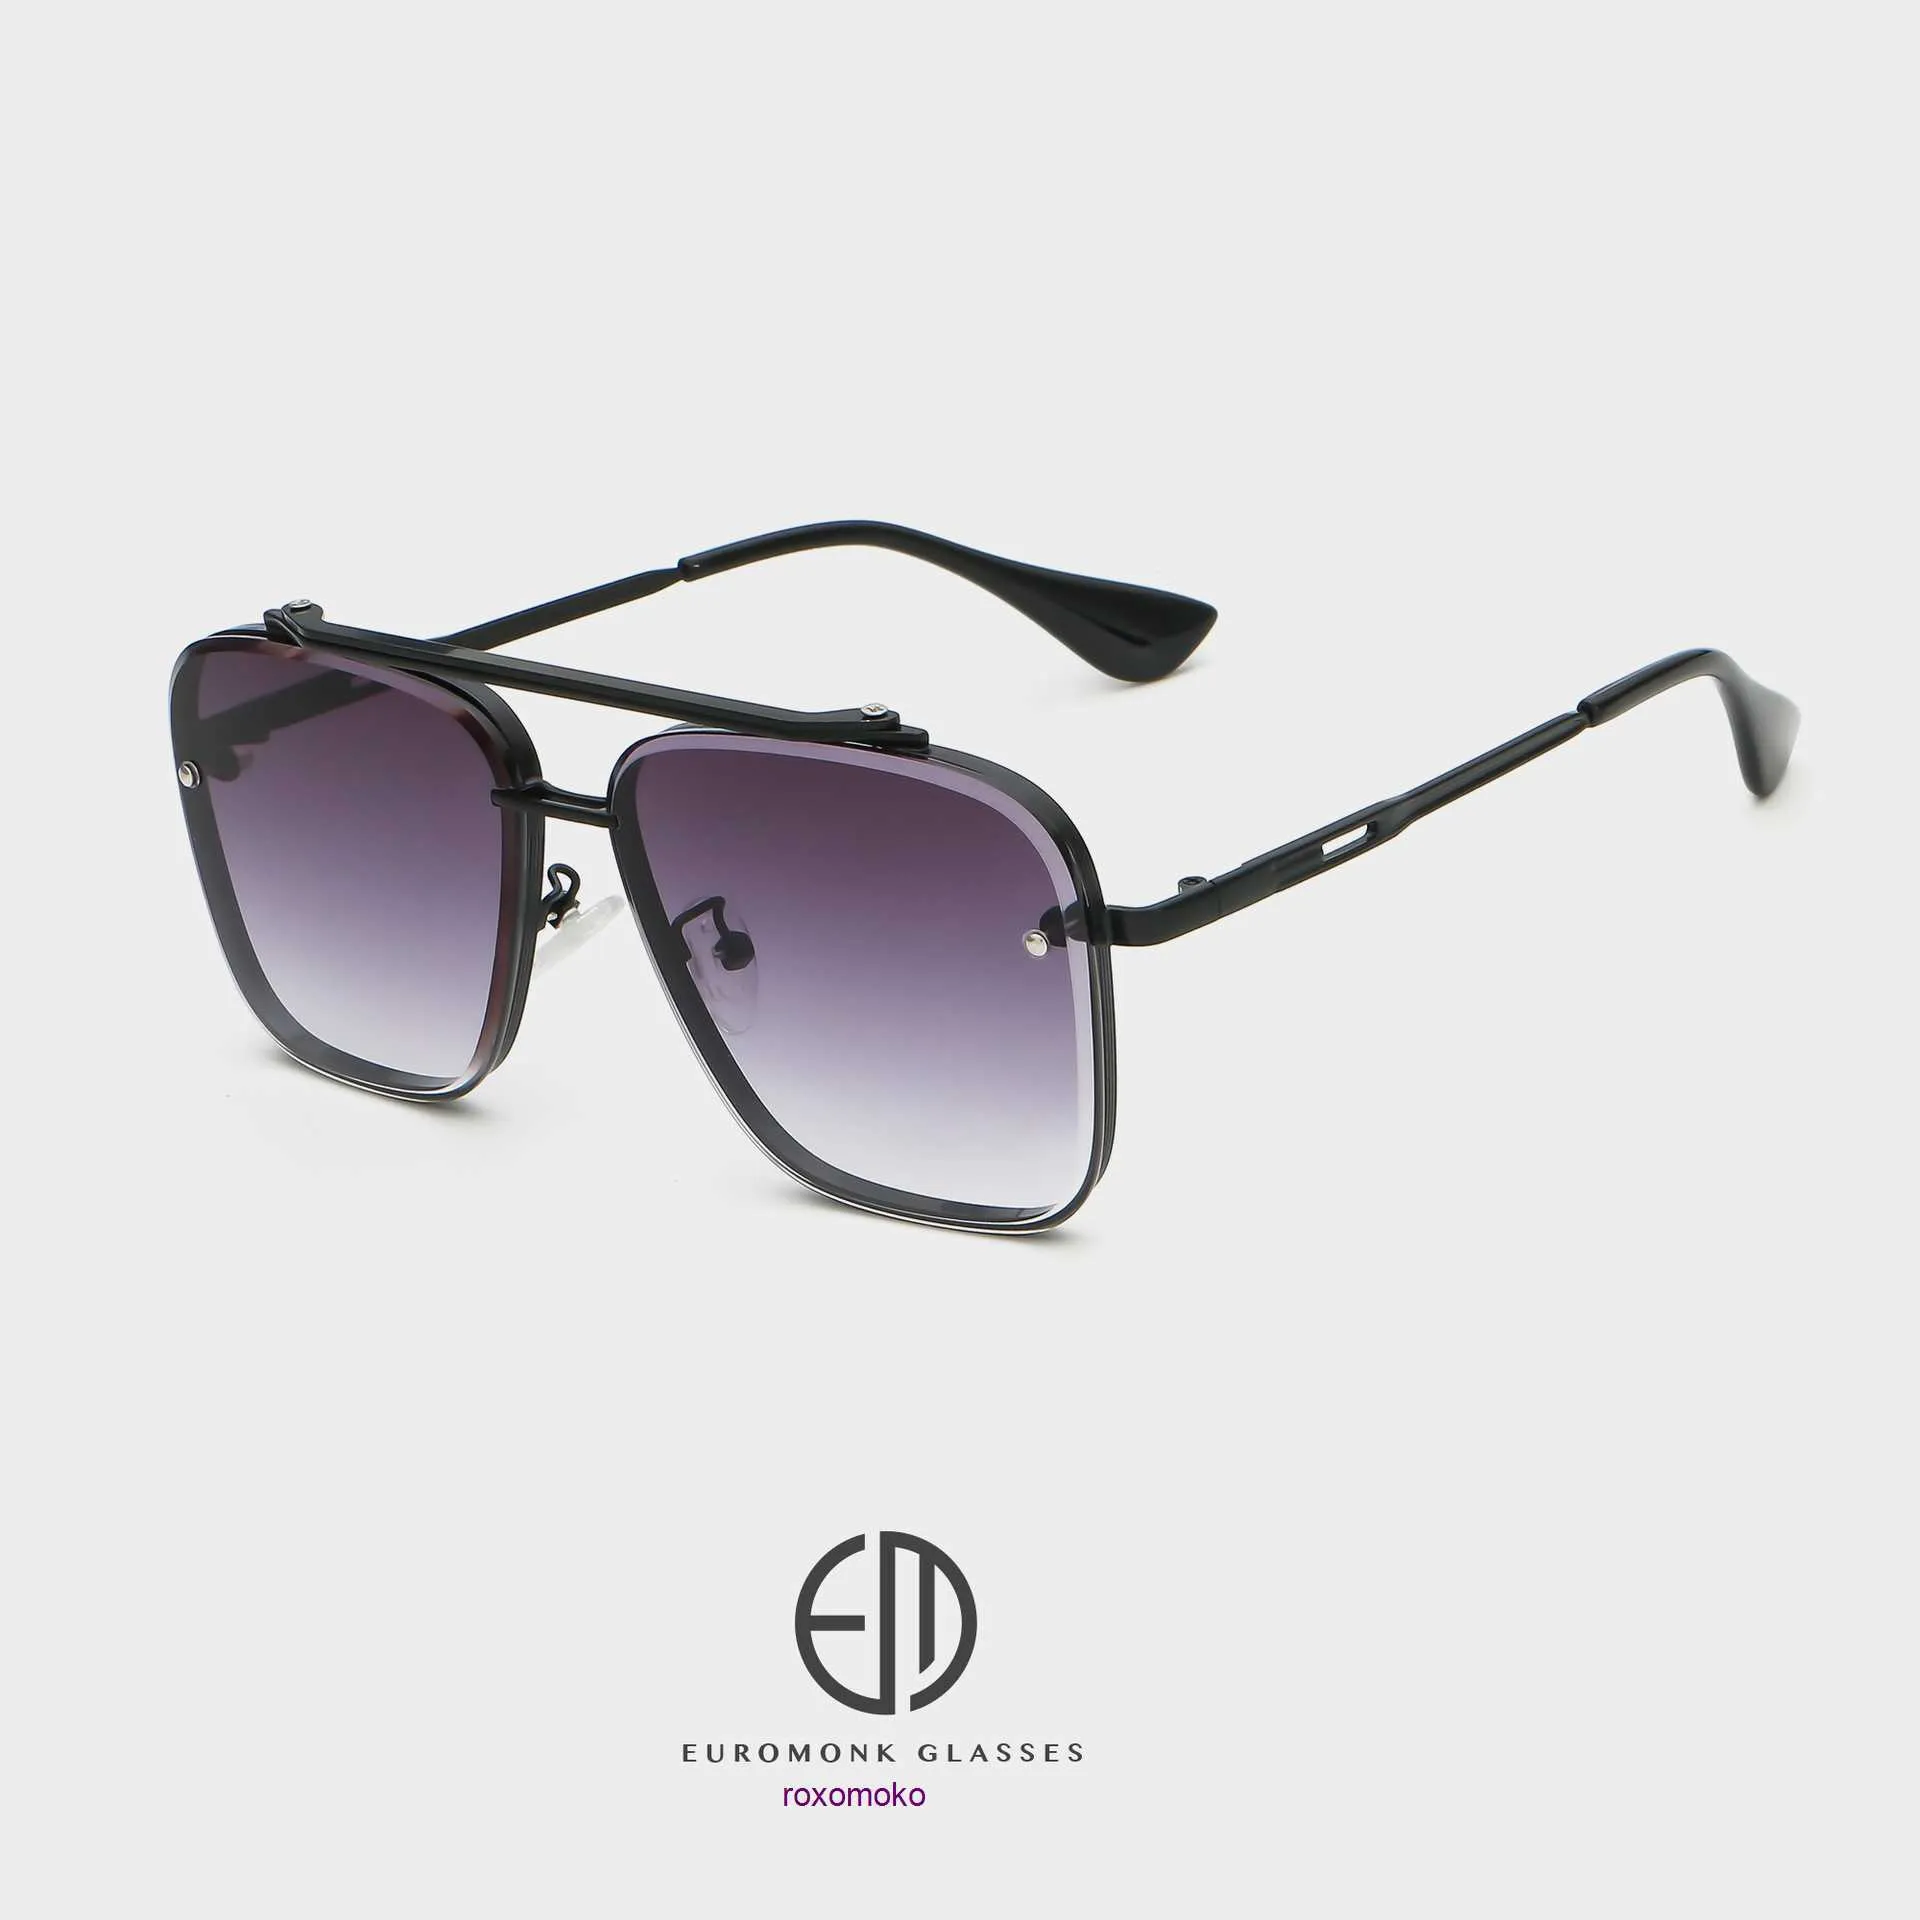 Top Original Großhandel für Dita-Sonnenbrillen im Online-Shop. Neue, personalisierte, modische, vielseitige Sonnenbrille mit großem Rahmen und Doppelstrahl